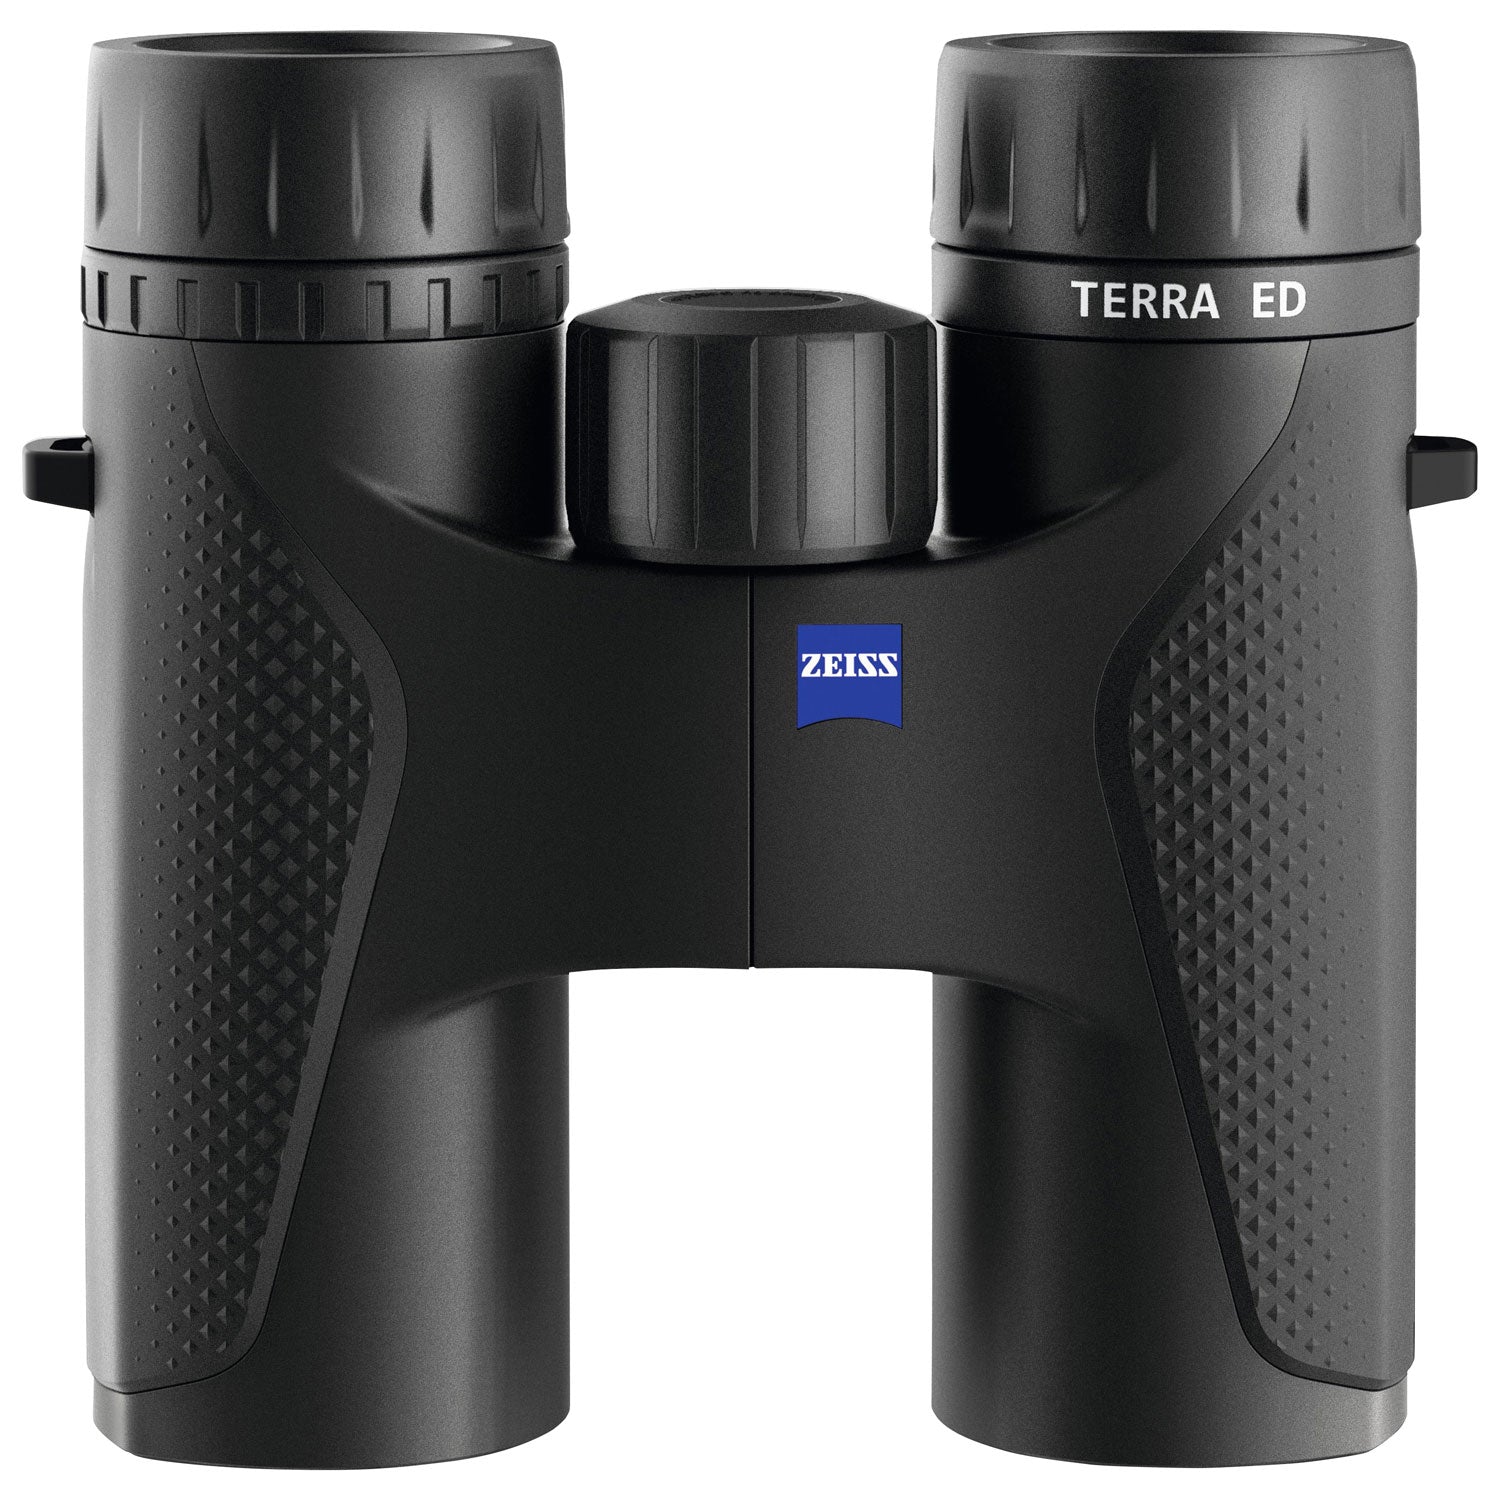 Zeiss DF Terra ED 8X32 Waterproof Binoculars